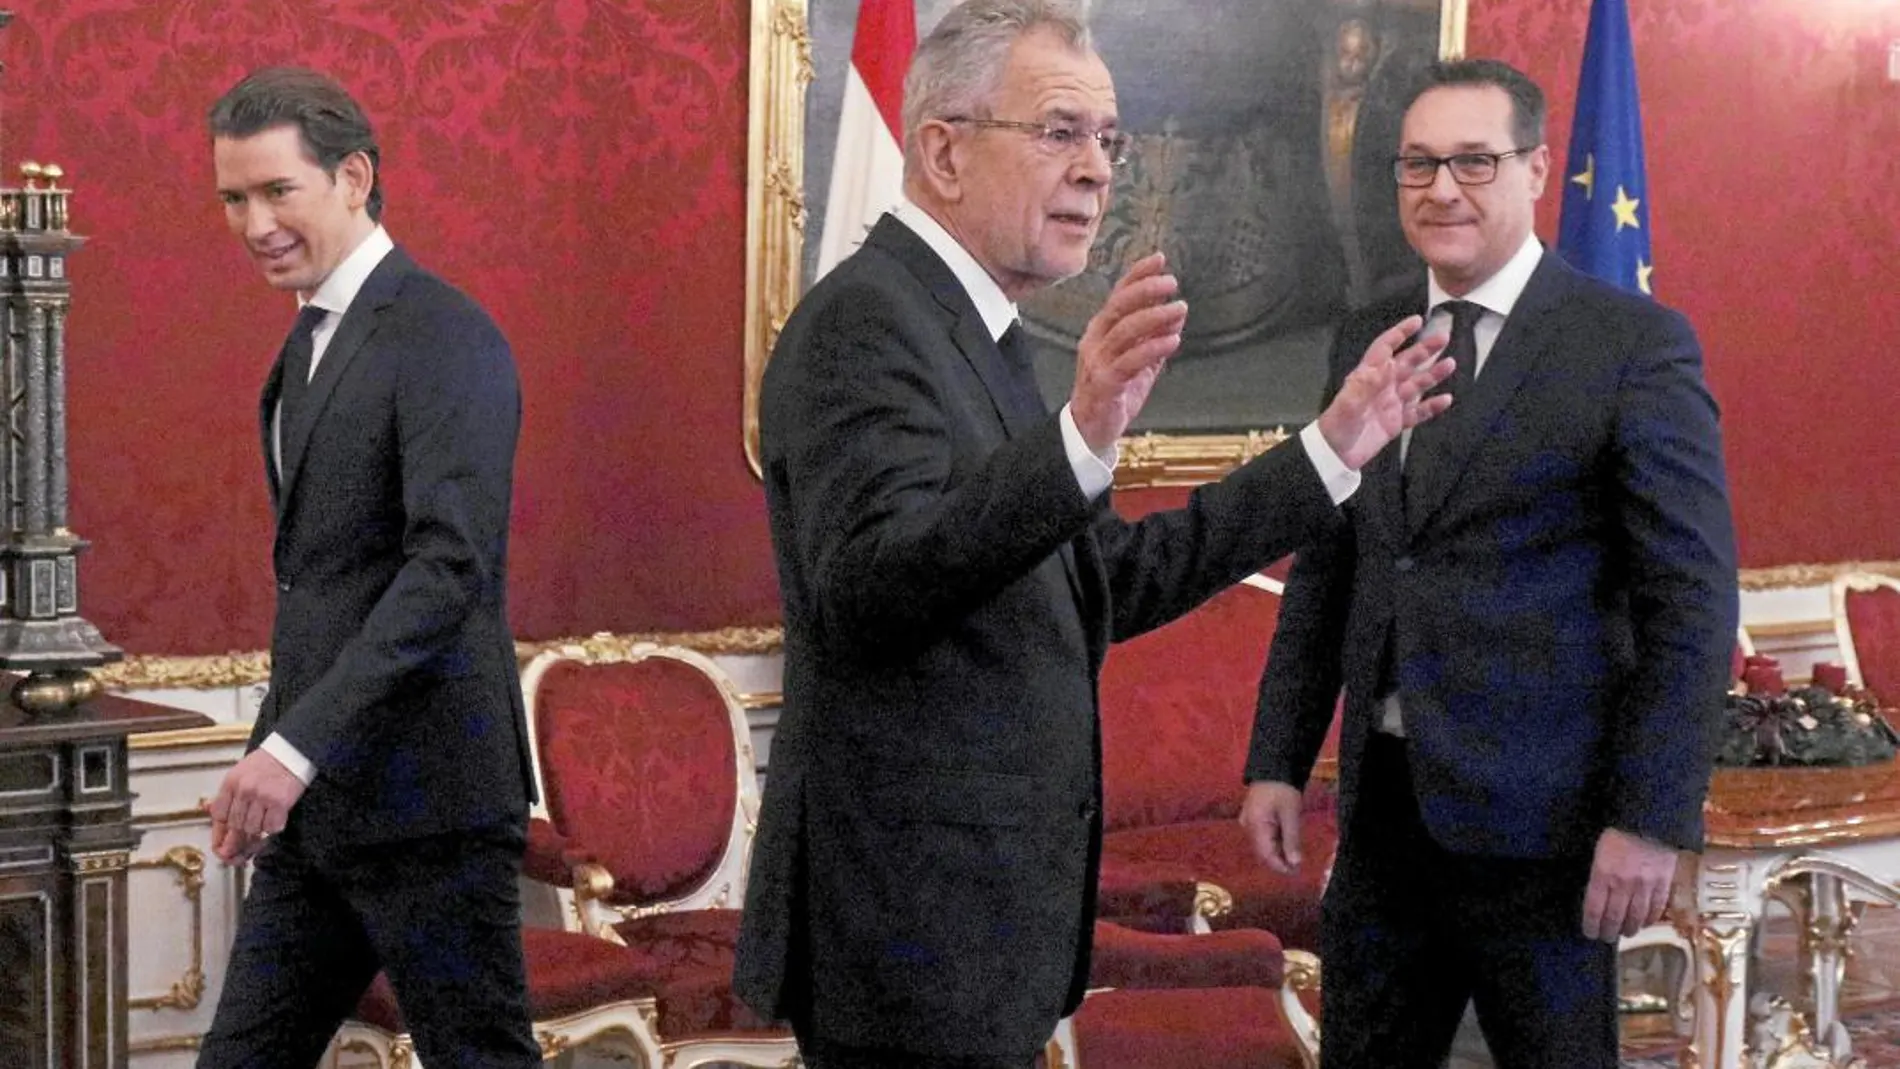 Kurz, a la izquierda, y Strache, a la derecha, presentaron al presidente Van der Bellen, en el centro, su programa